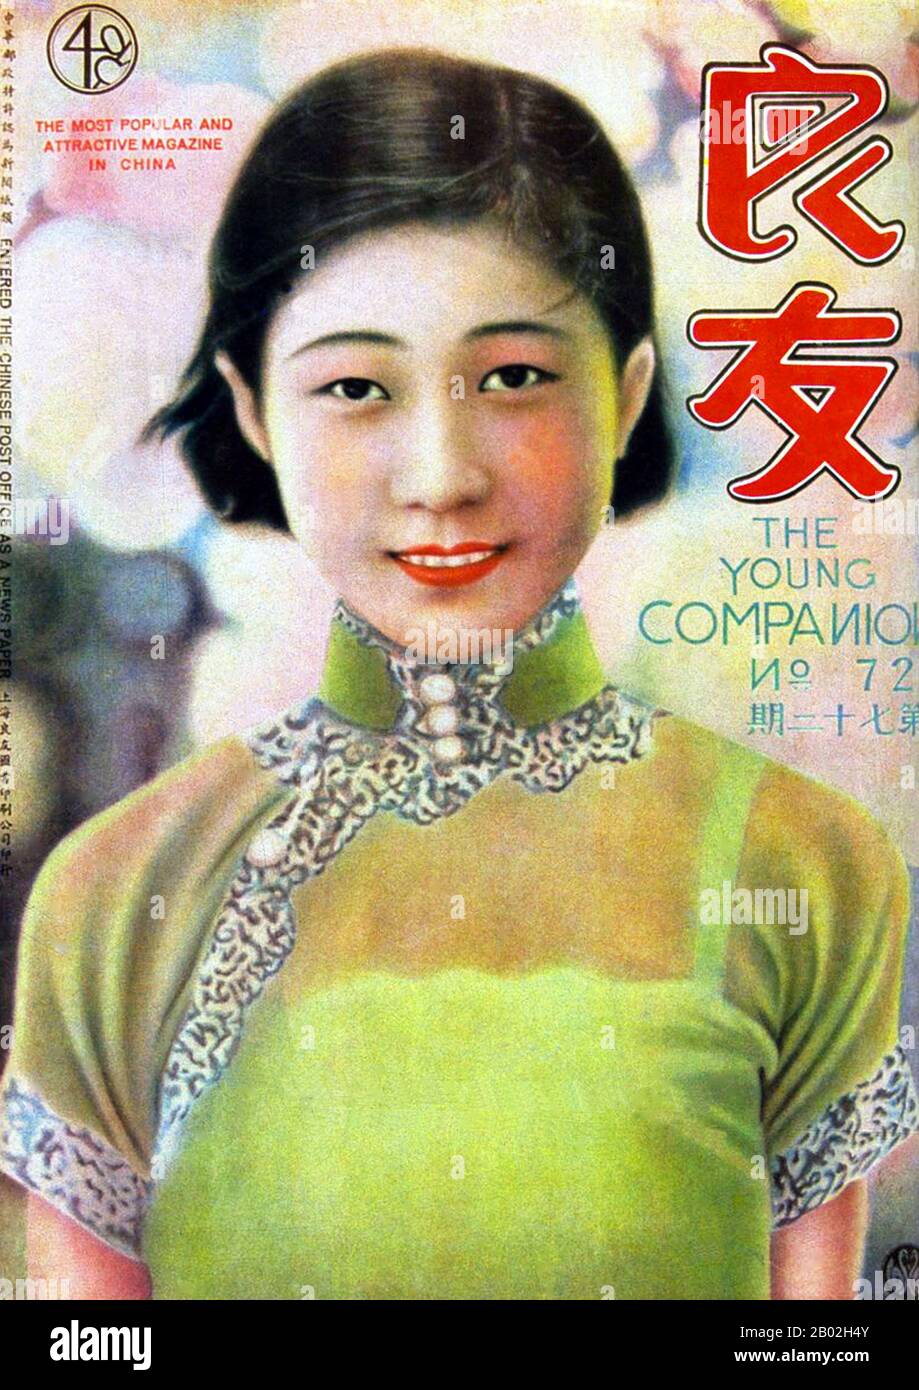 1926 wurde Young Companion Pictorial (Liang You, wörtlich 'guter Freund') in Shanghai als erste farbige Varietézeitschrift gegründet. In den 1920er und 30er Jahren, als gedruckte Nachrichten selten und kostbar waren, war Companion bereits ein Pionier in der Bereitstellung bildlicher Berichte für die Öffentlichkeit. Es wurde schnell die Publikation, die Chinas Leidenschaft für Jahrzehnte aufzeichnete und provozierte. Während des Epos des Krieges und des Friedens konnten die Leser die Gesichter und Gedanken einflussreicher Politiker wie Sun Zhongshan (Sun Yat-sen), Jiang Jieshi (Chiang Kai-shek), Feng Yuxiang, Zh sehen und lesen Stockfoto